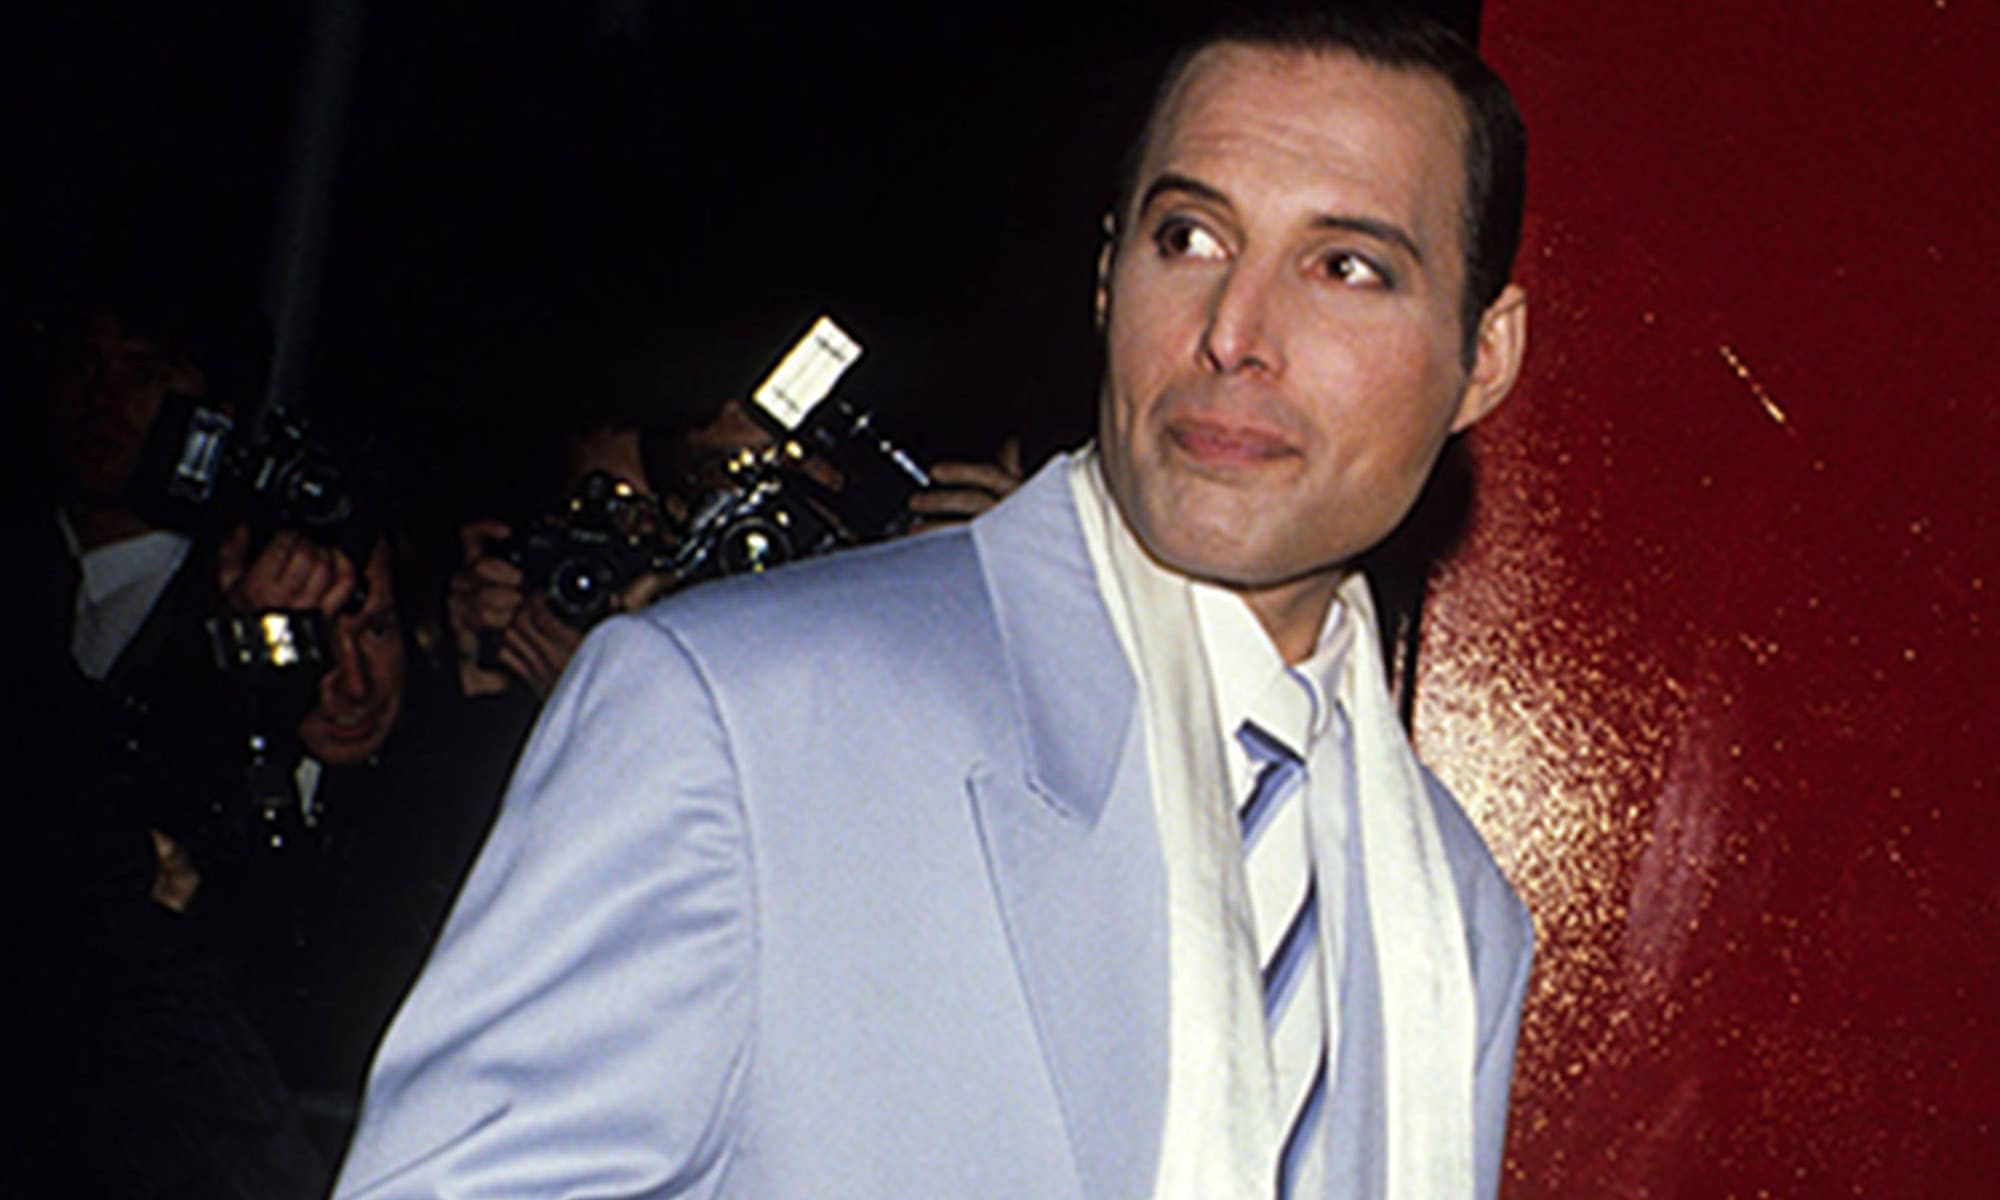 Freddie Mercury in a lavender suit